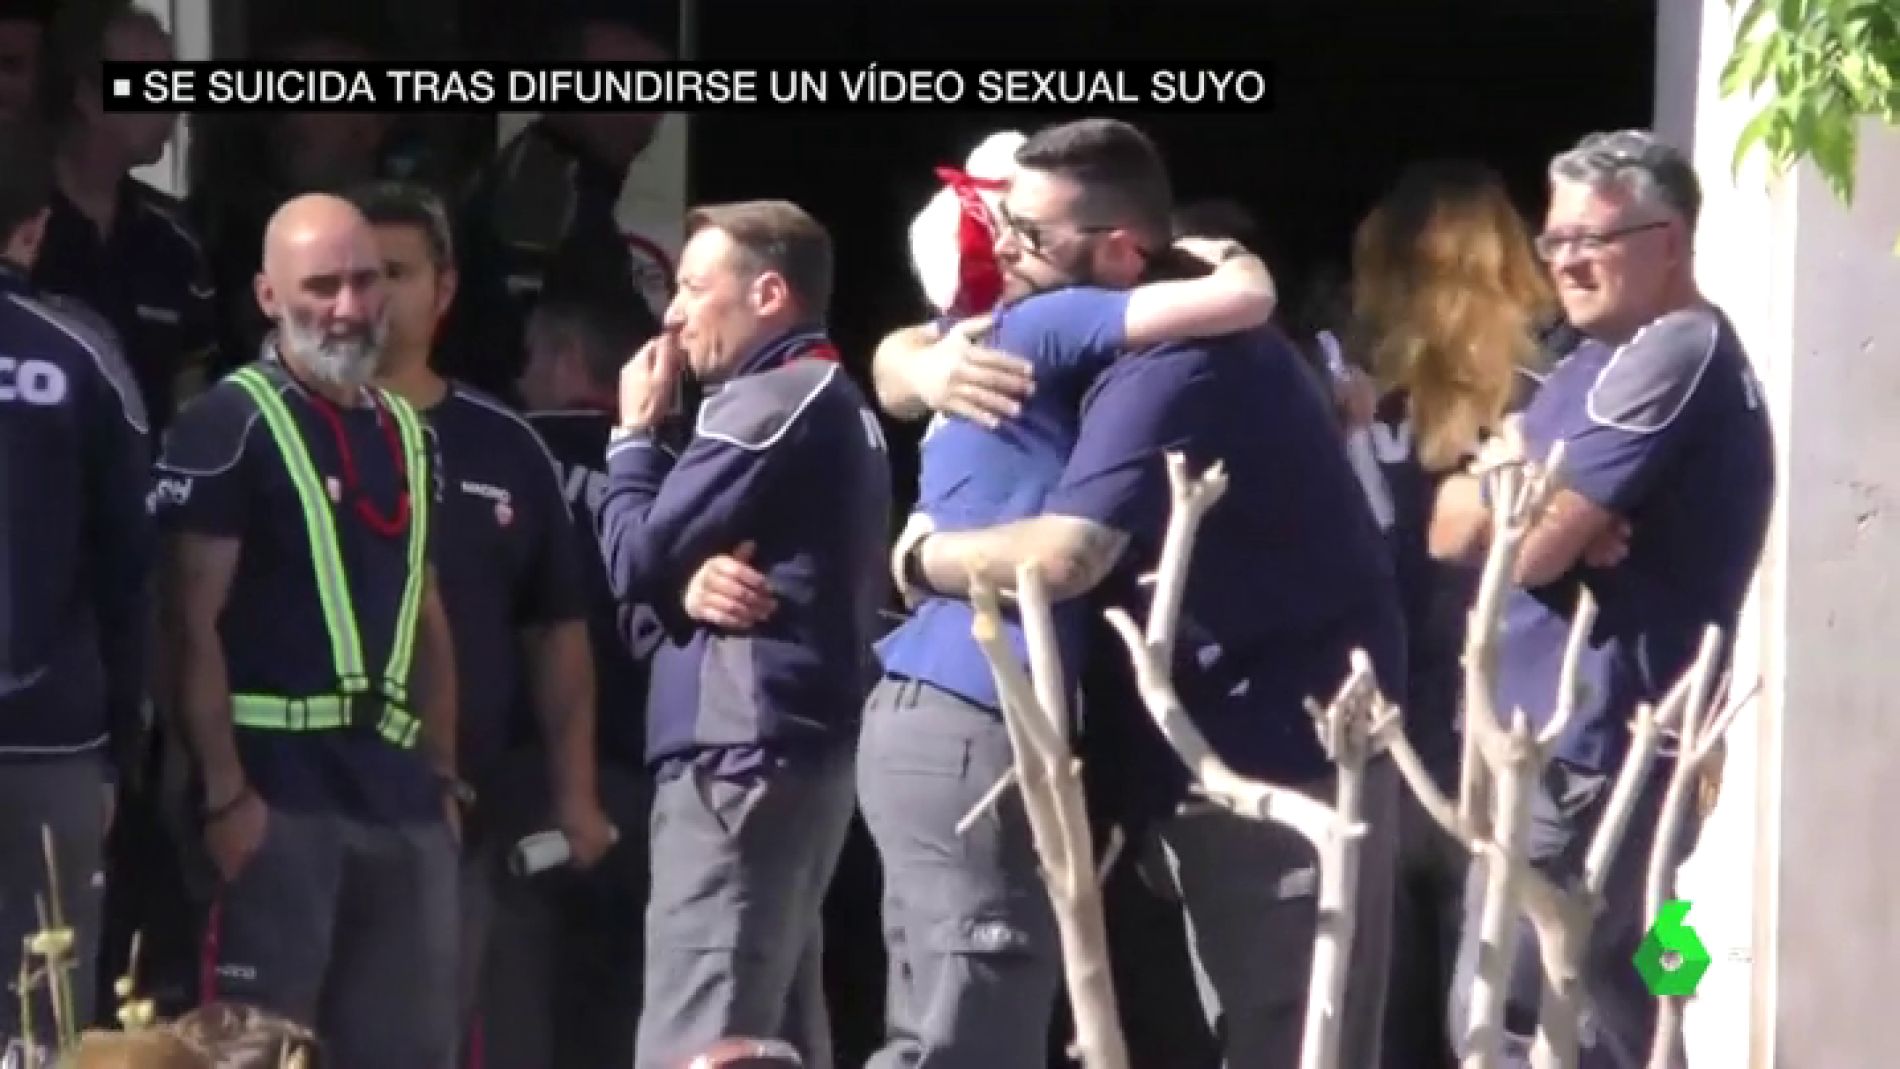 Una madre se suicida en Madrid tras difundirse un vídeo sexual suyo entre sus compañeros de trabajo en Iveco